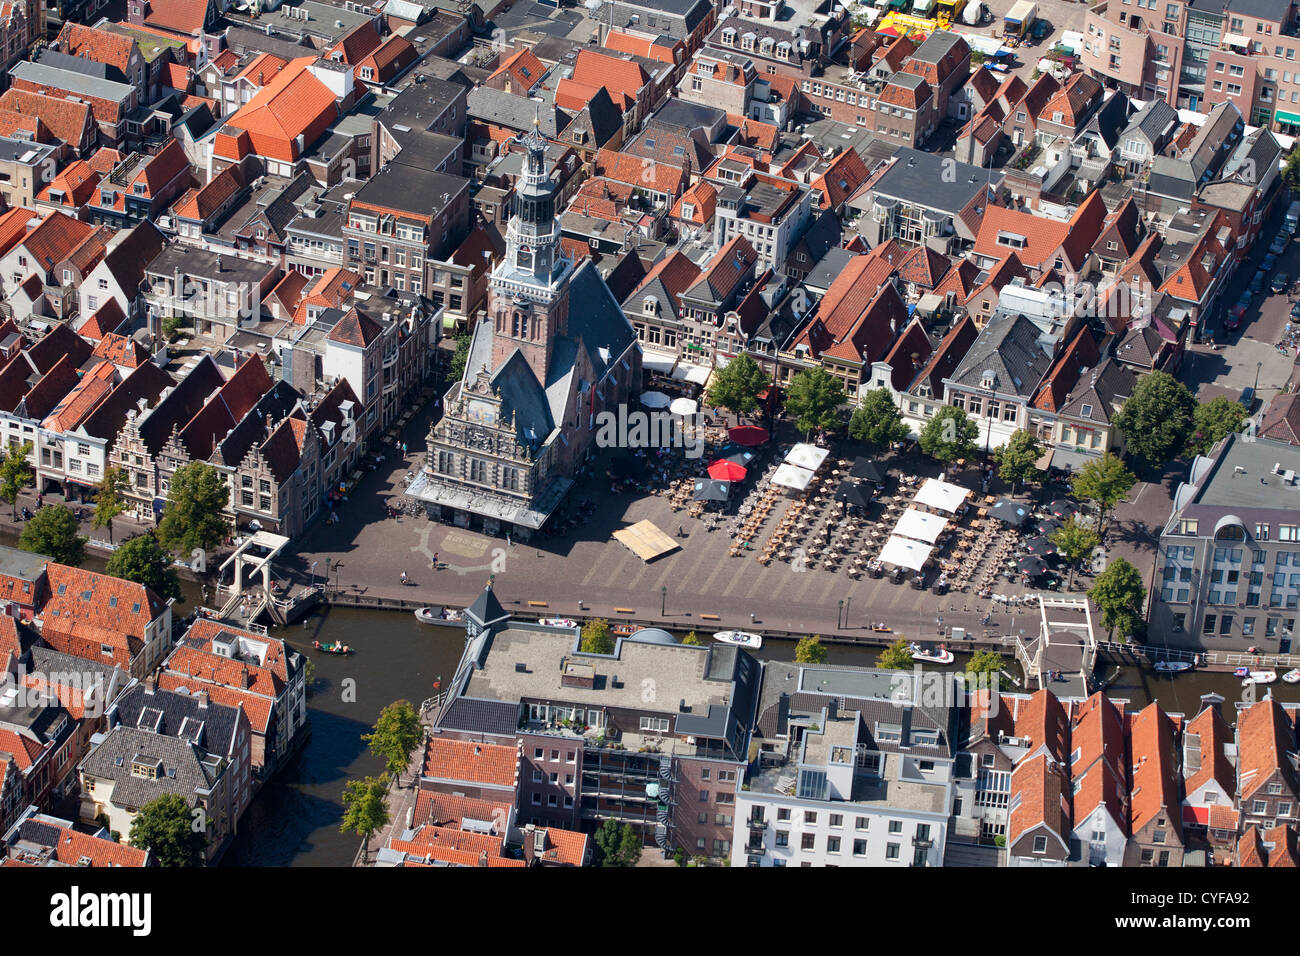 Die Niederlande, Alkmaar. Wiegen Sie Haus und wiegen Platz. Speicherort der traditionelle Käsemarkt am Freitag. Luft. Stockfoto